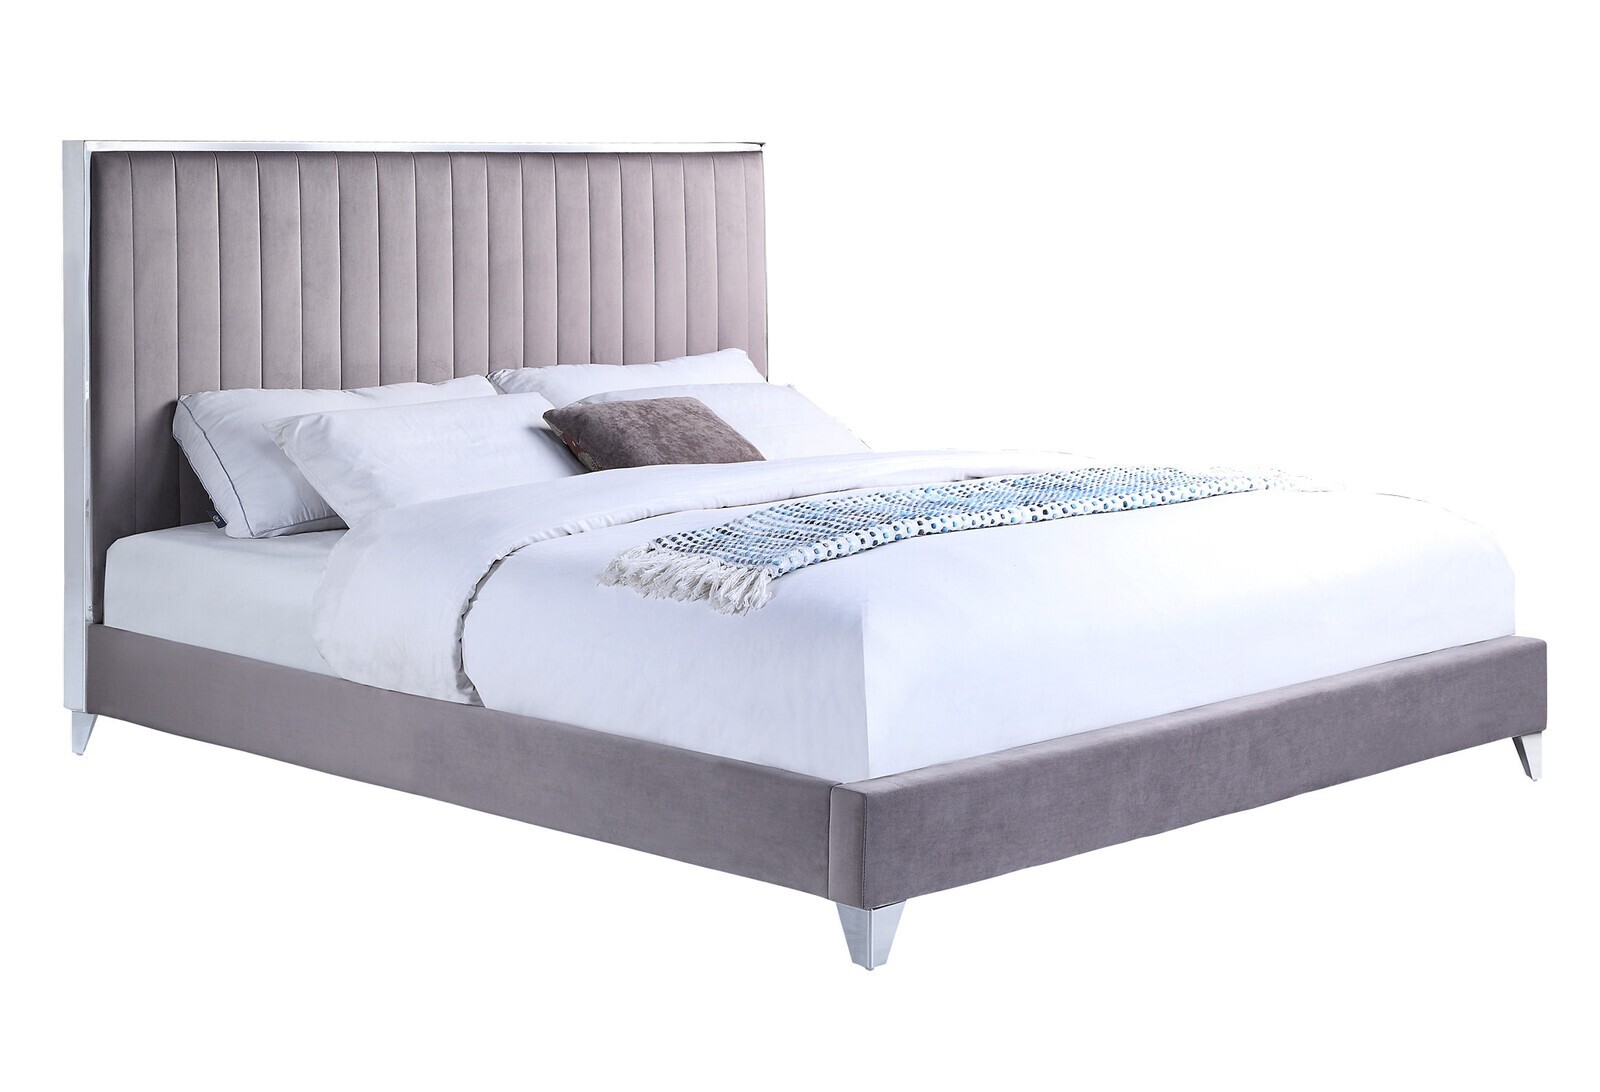 Silverdale Upholstered Queen Bed Chrome Frame Opulent Velvet Steel Fabric